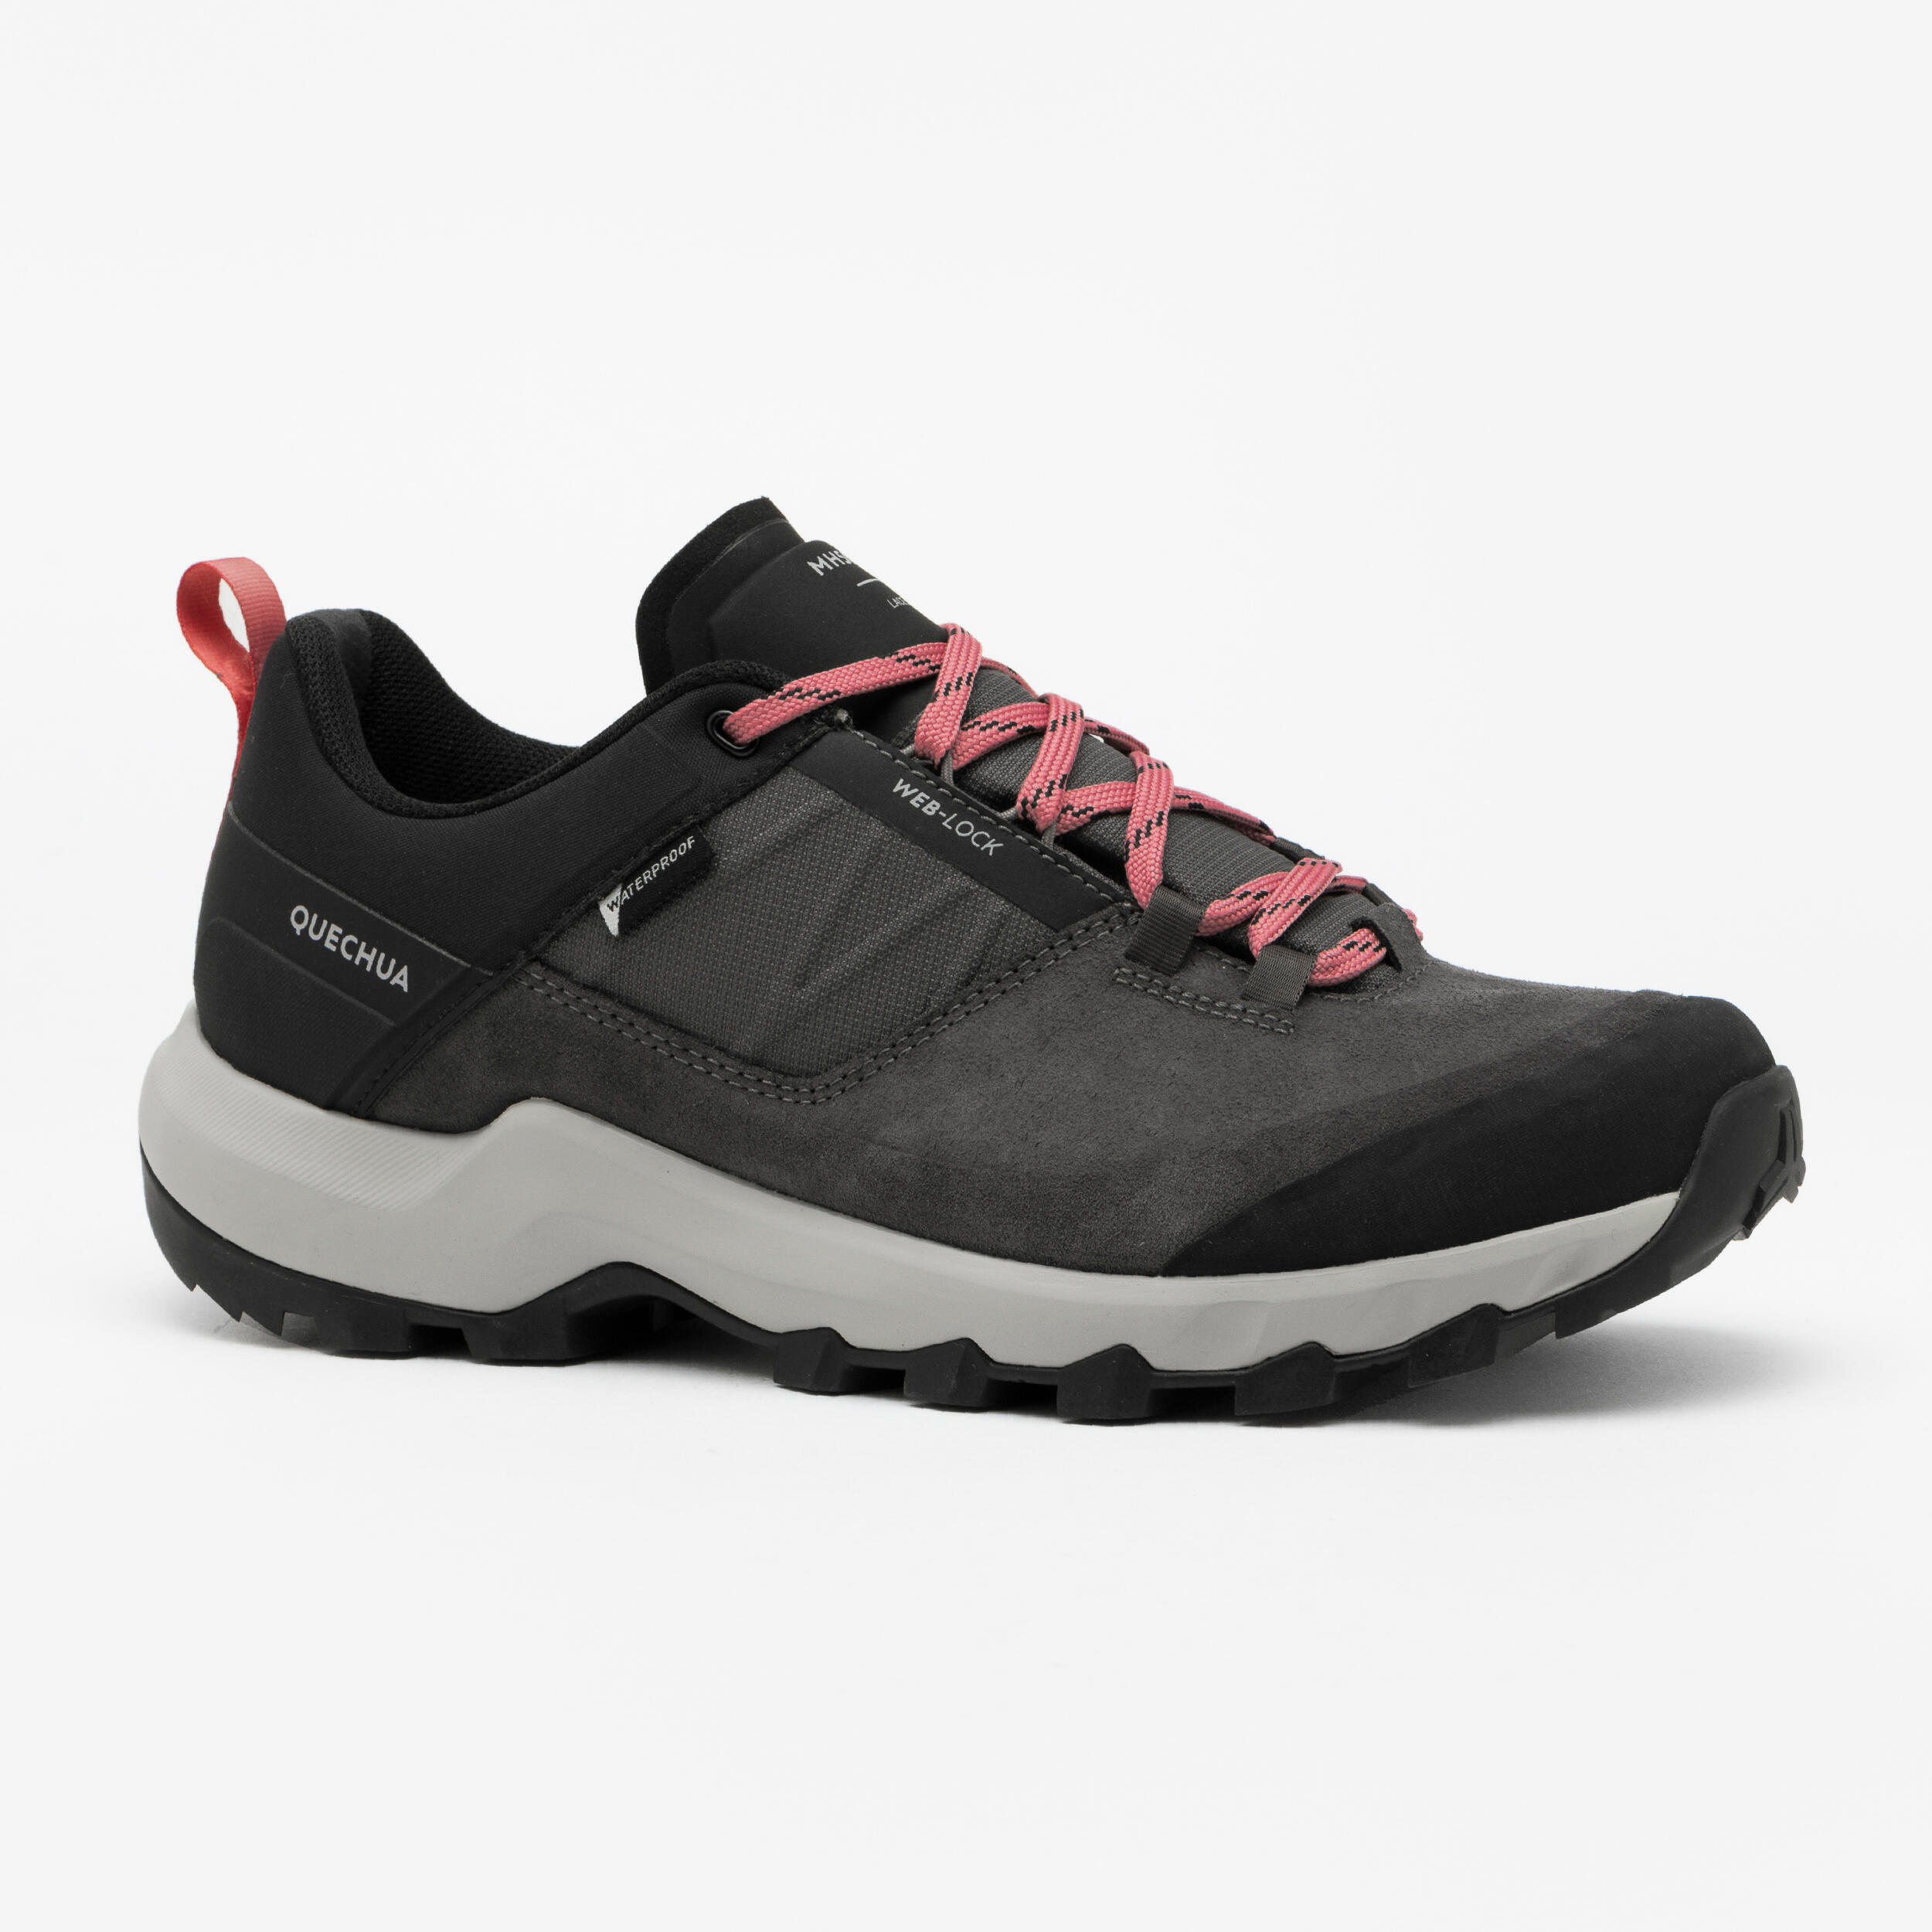 Women's waterproof mountain walking shoes - MH500 Grey 1/8